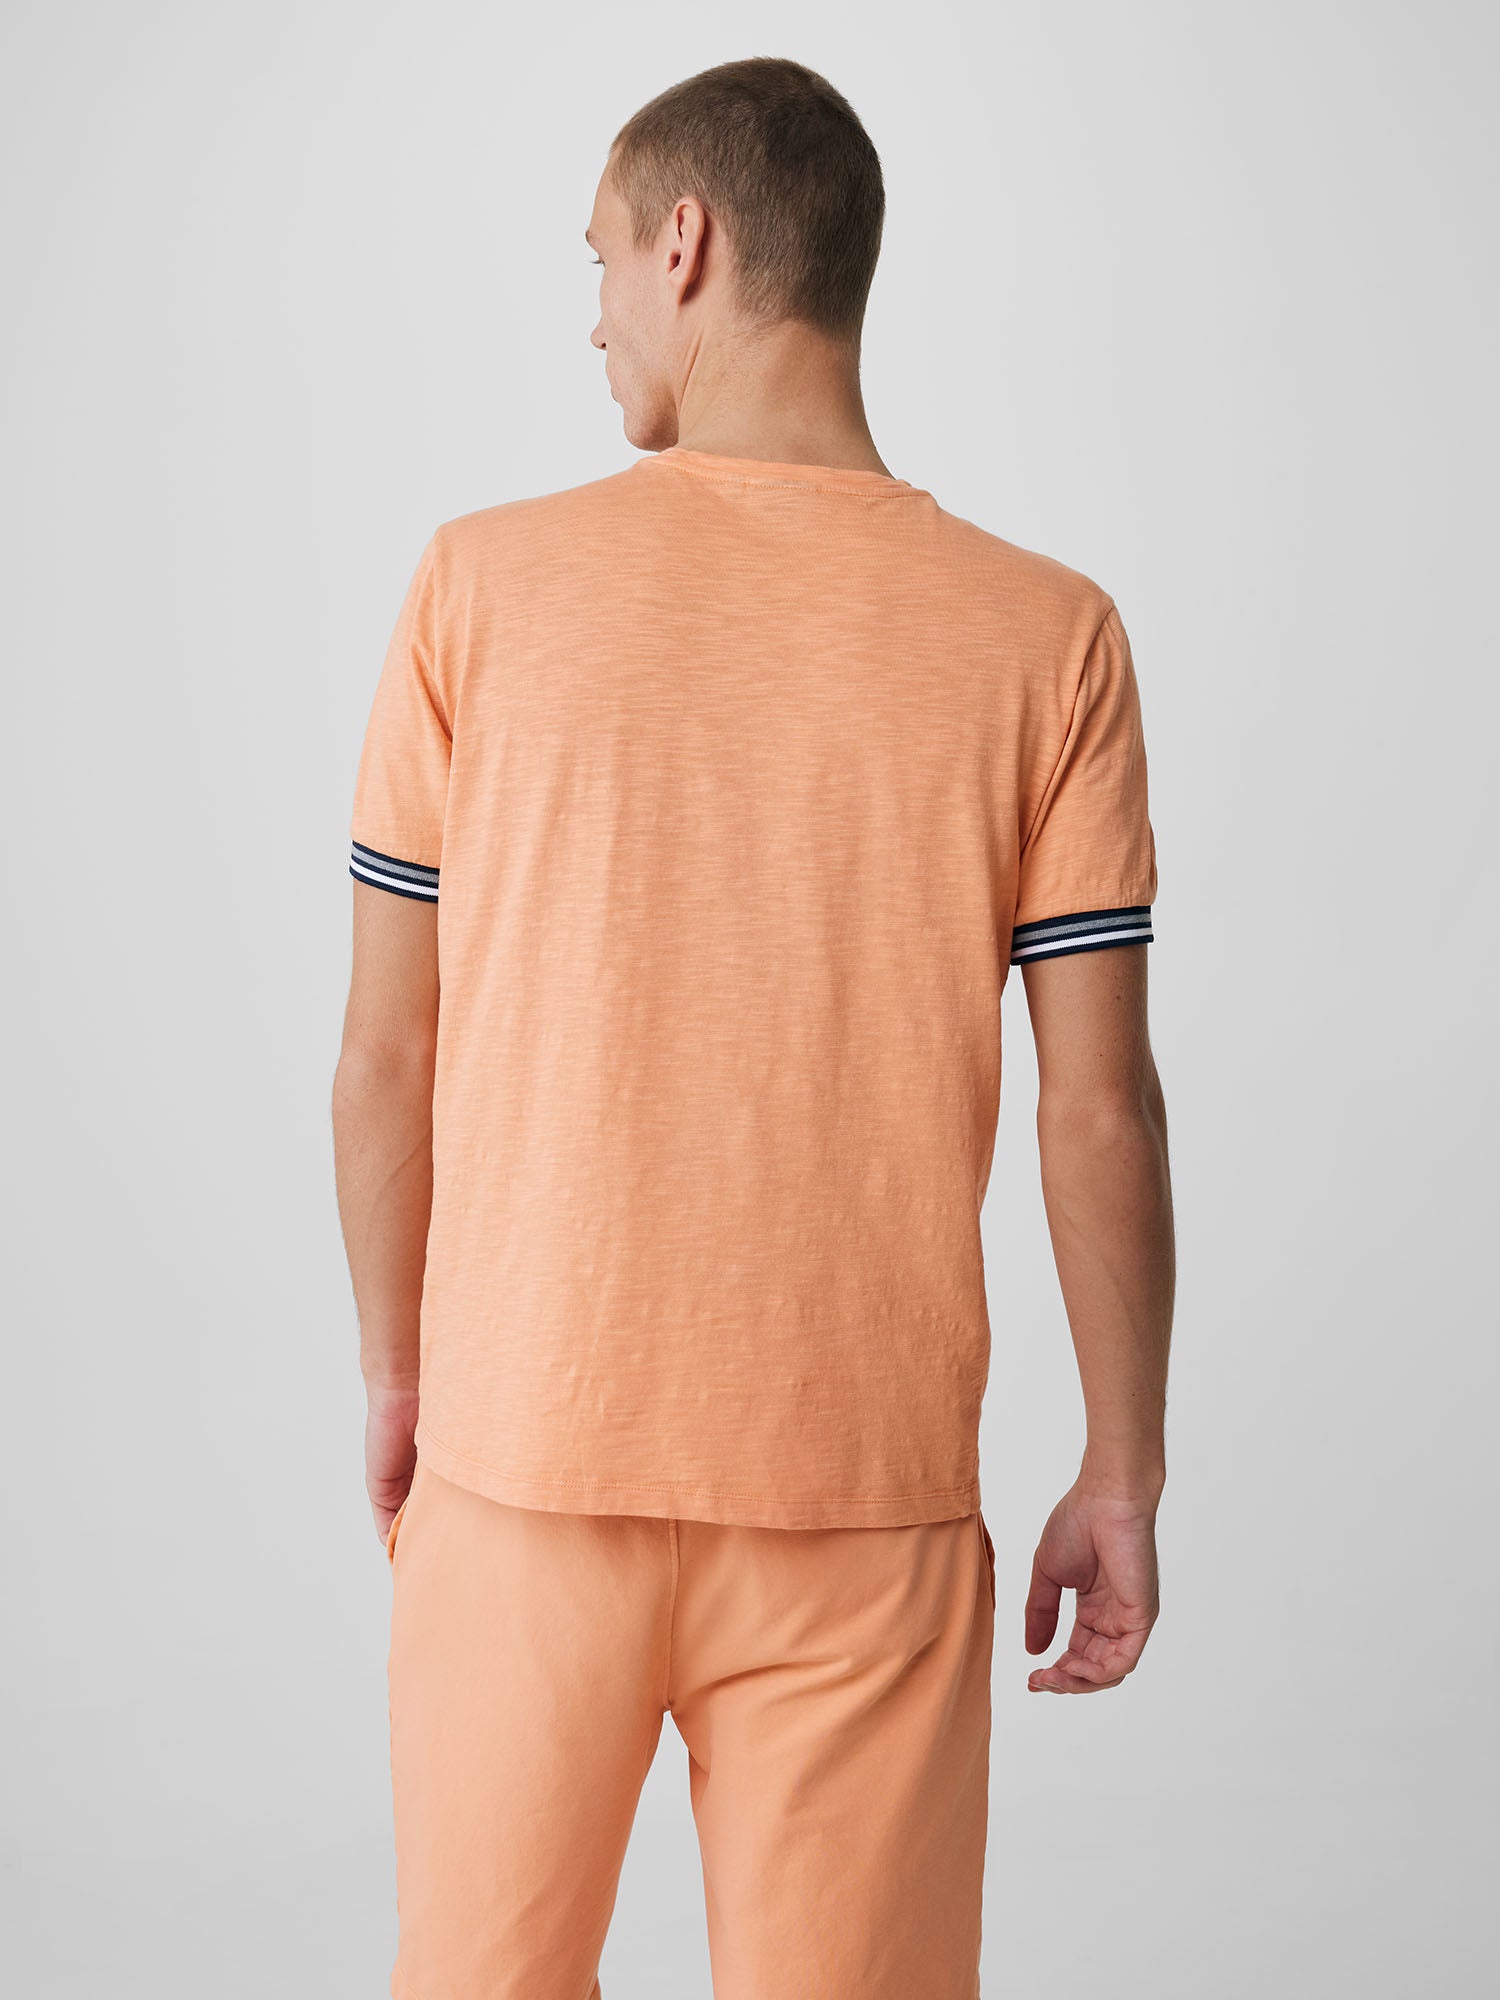 Genti T-shirt - Oranje